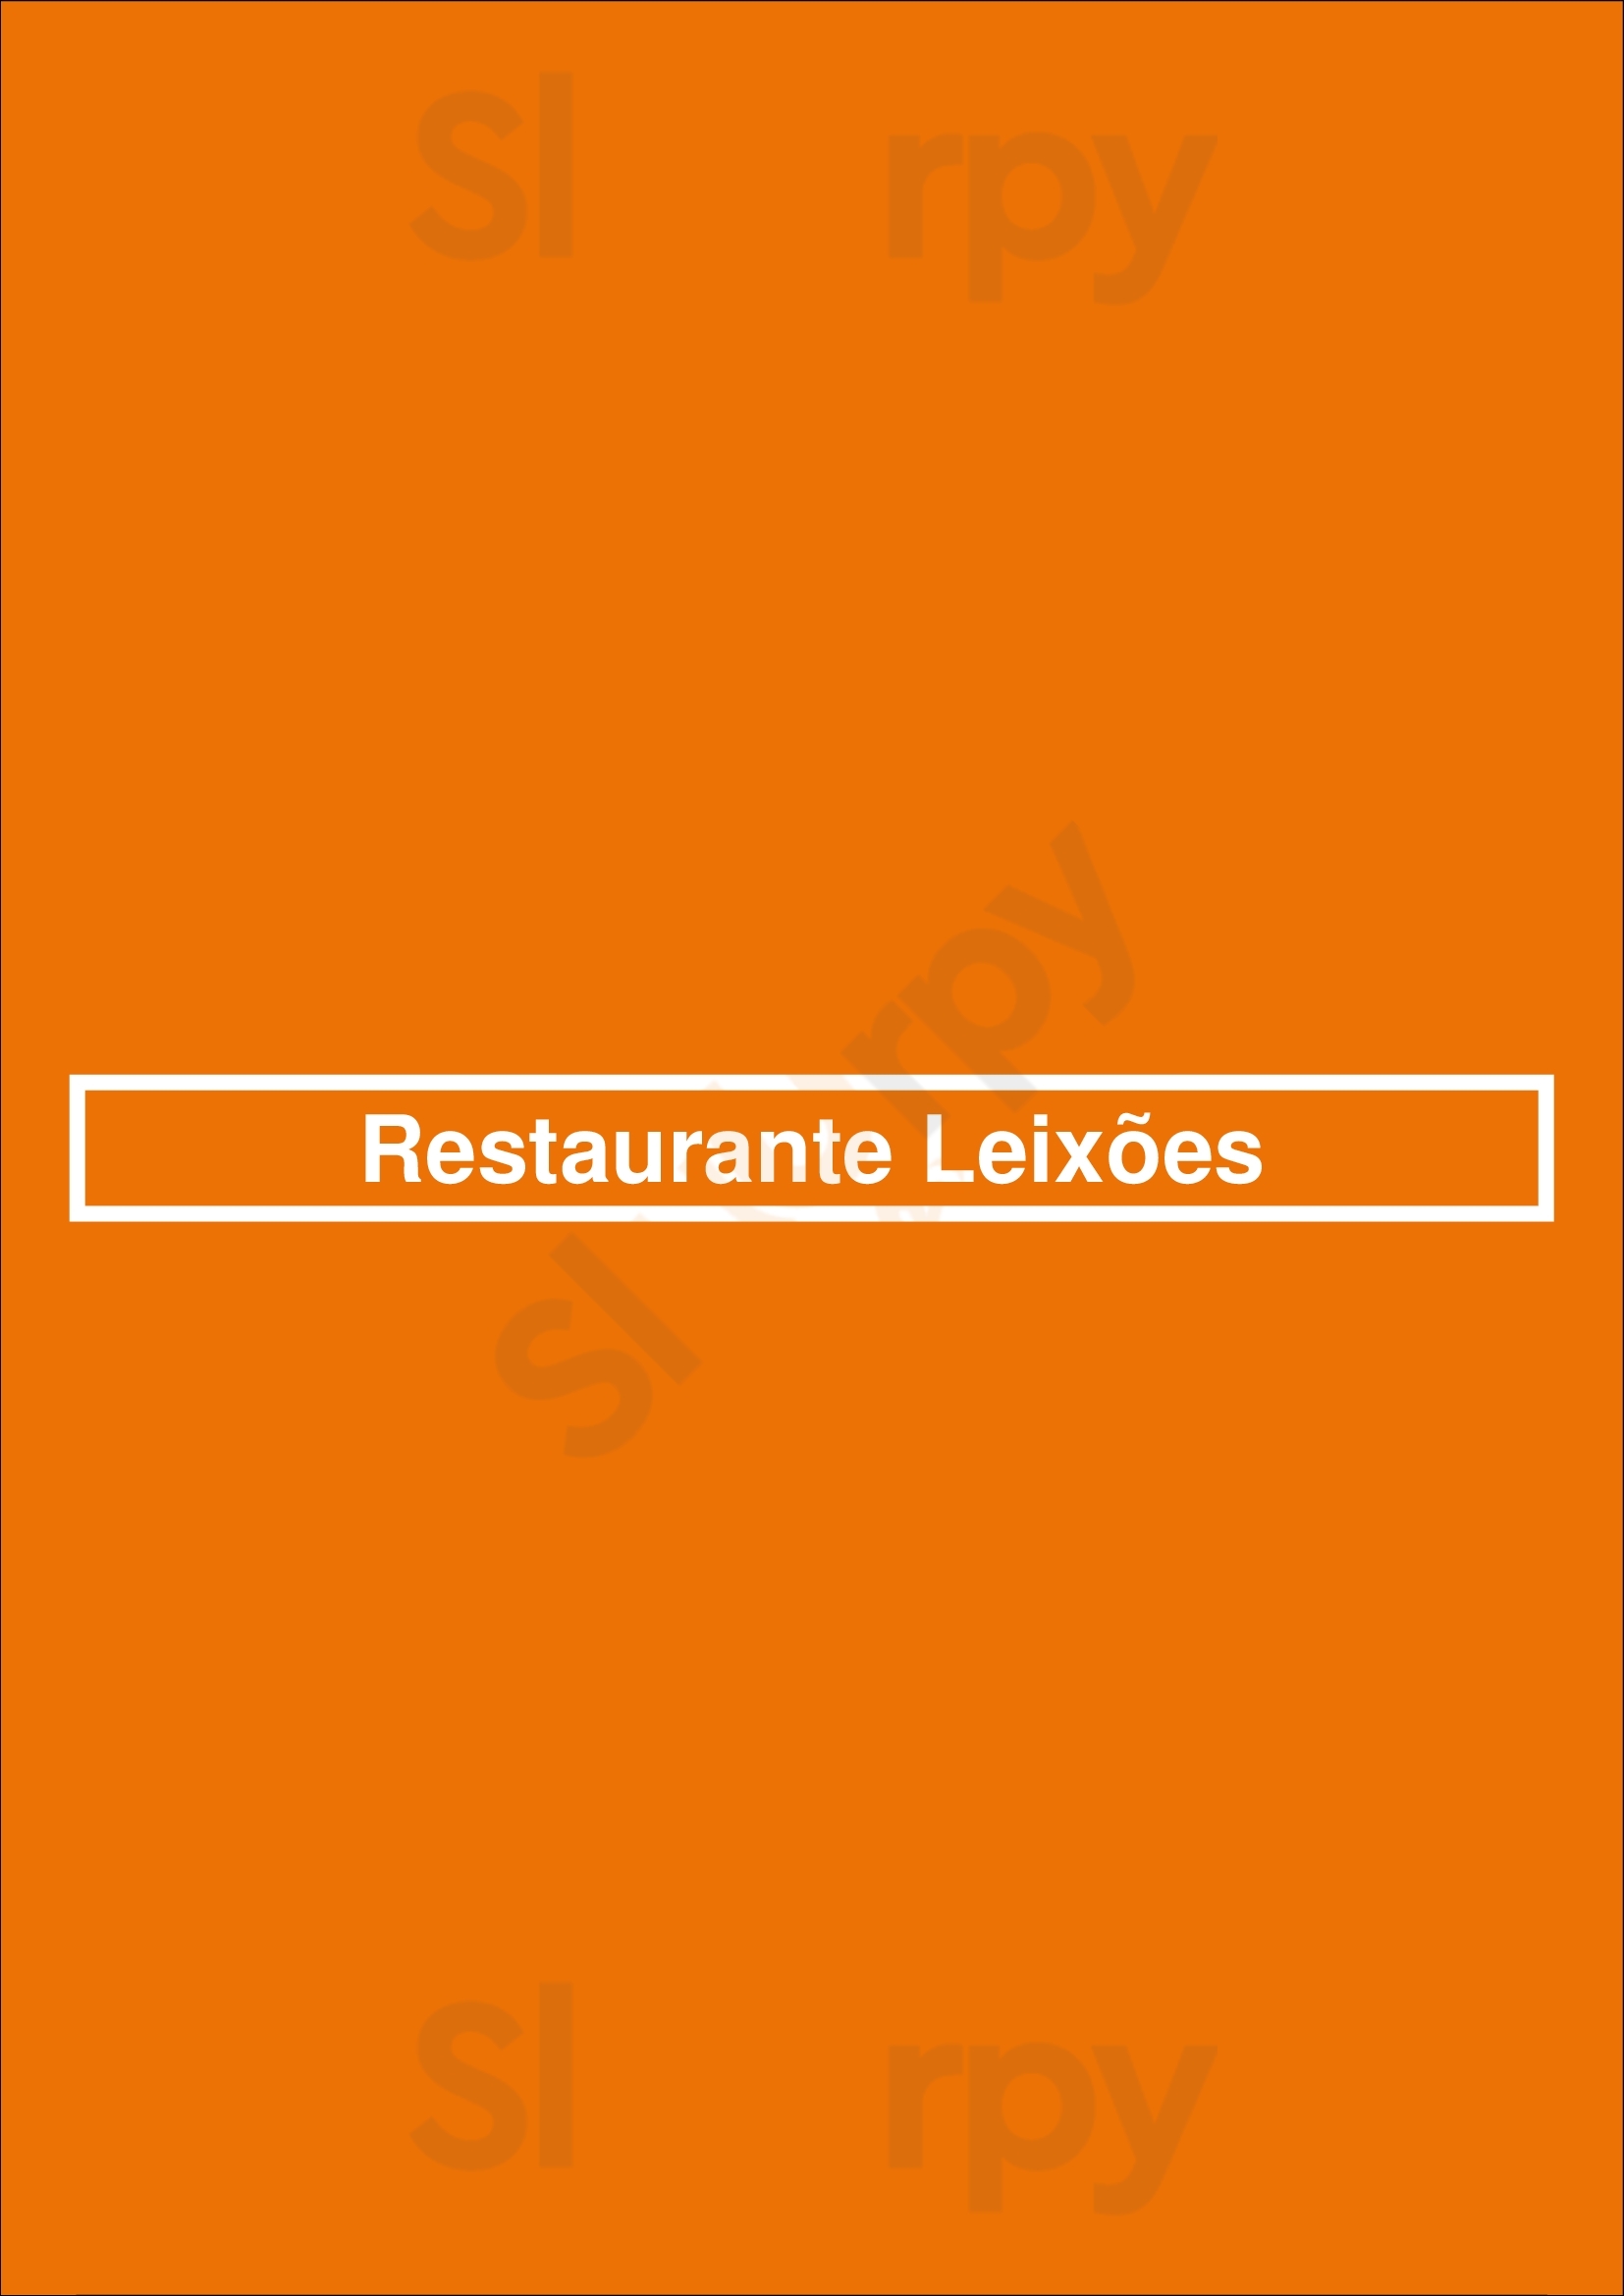 Restaurante Leixões Matosinhos Menu - 1